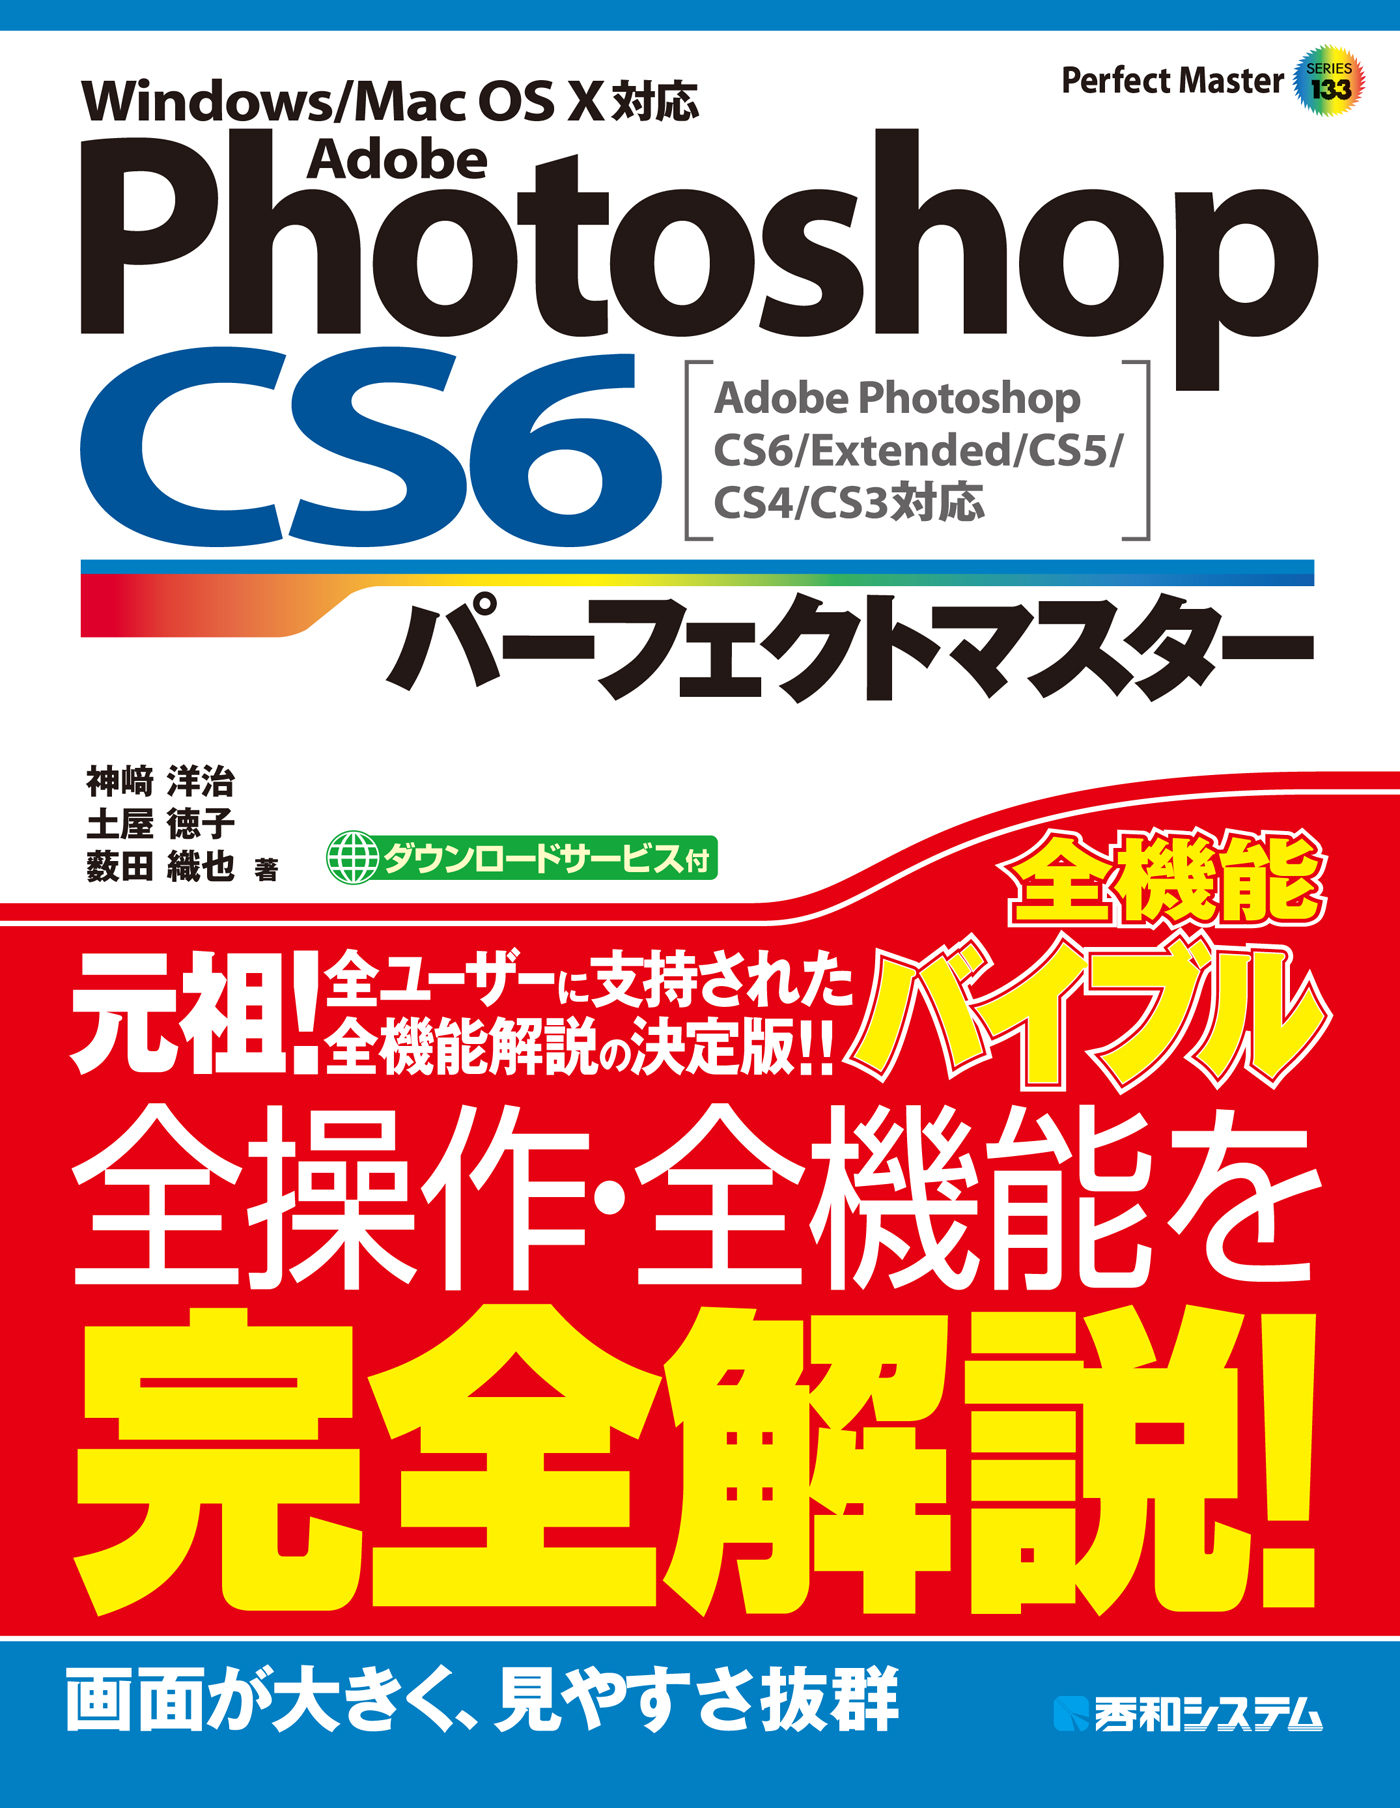 Adobe Photoshop CS6 パーフェクトマスター Adobe Photoshop CS6/Extended/CS5/CS4/CS3対応  Windows/Mac OS X対応 | ブックライブ